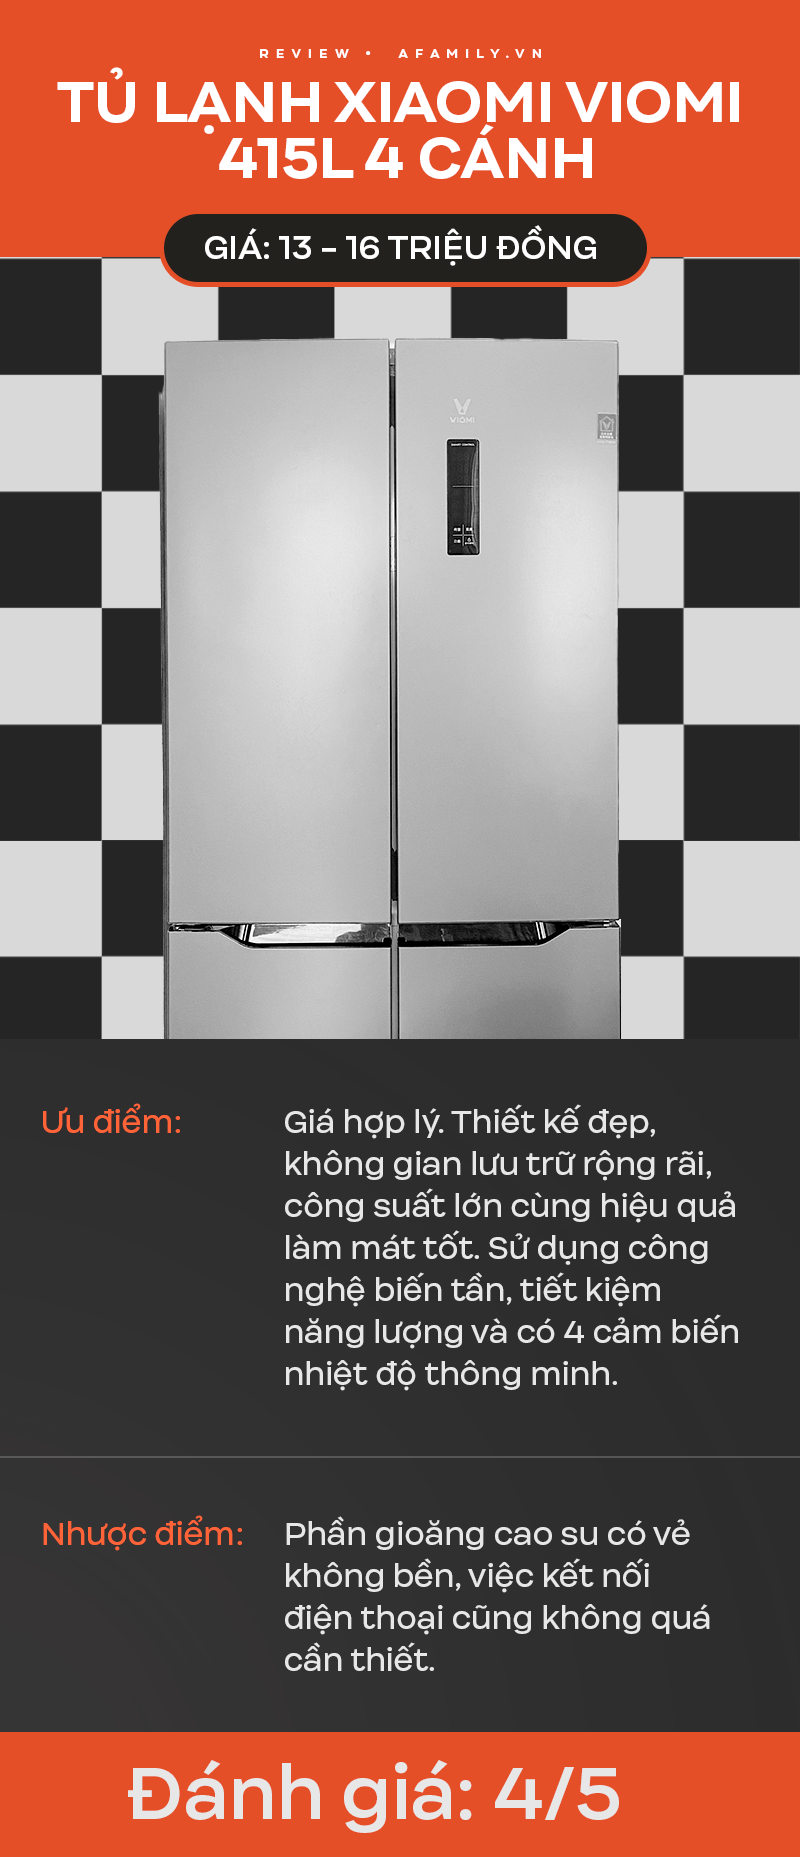 8X Hà Nội review tủ lạnh Xiaomi sau 1 năm dùng, kết luận rằng rẻ, đẹp và dùng ổn nhưng chê ở điểm ít ai ngờ - Ảnh 12.